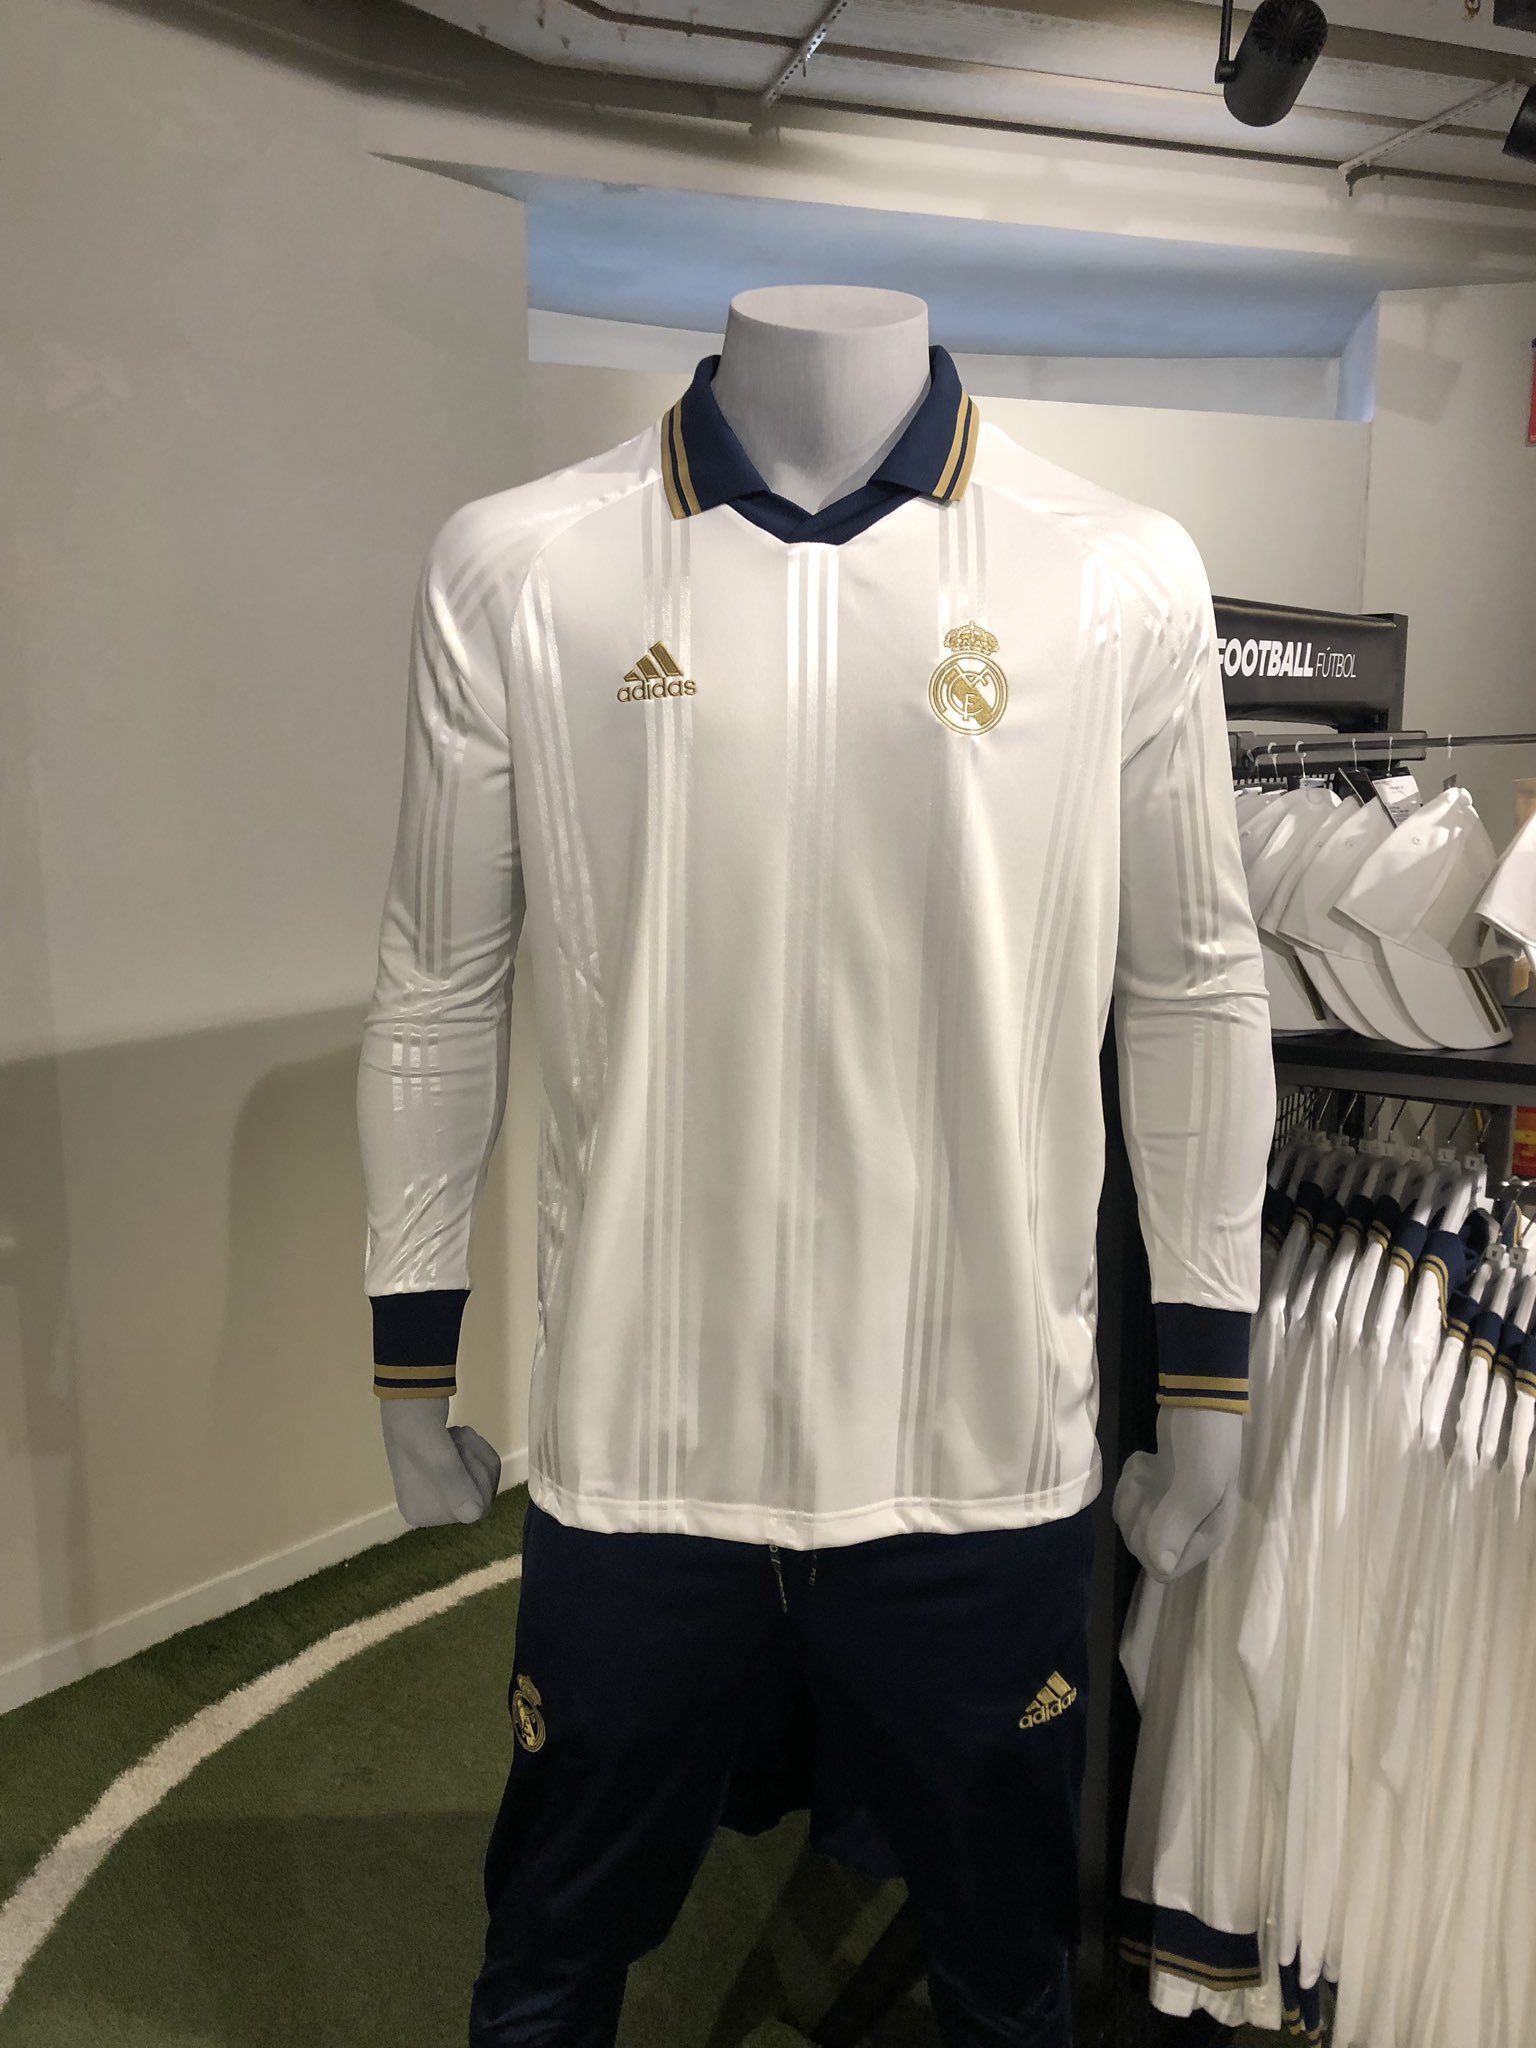 ssfm1902🏆 on Twitter: "Adidas Madrid 19-20 Retro Jersey https://t.co/CQQk16jRkI" / Twitter